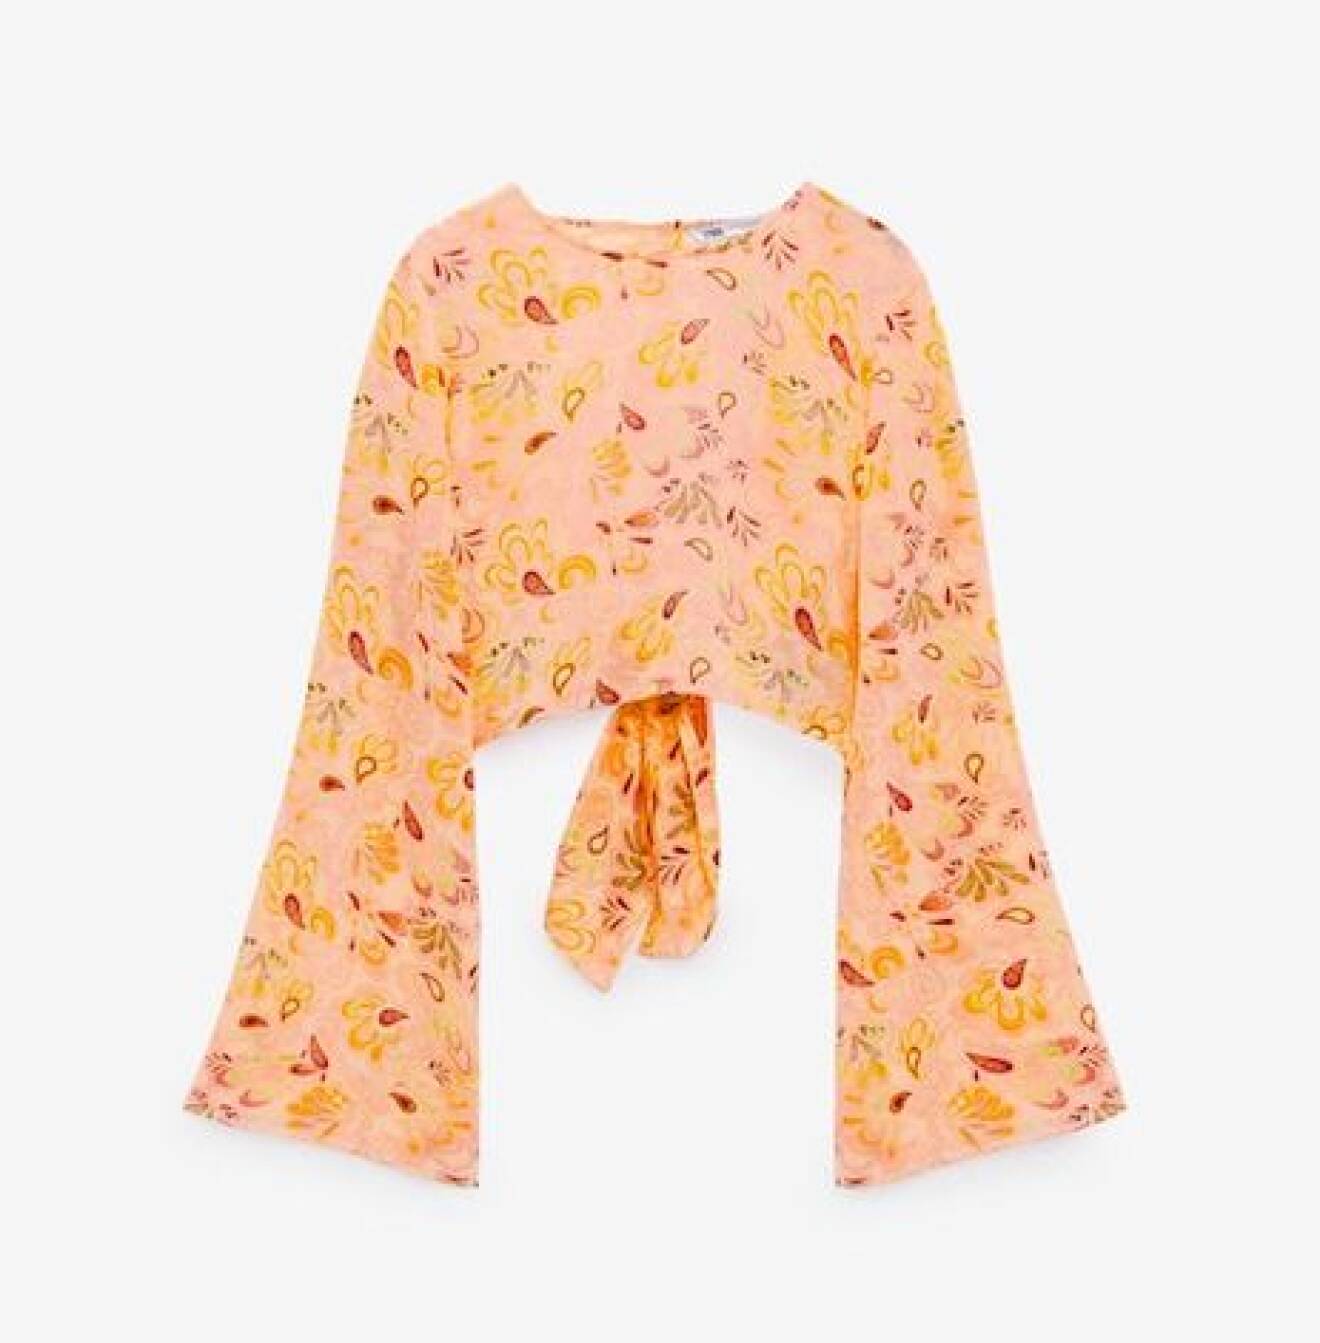 Rosa croppad tröja med långa ärmar och bar rygg med knytdetalj i bak. Mönster i gult, rött och orange. Topp från Zara.